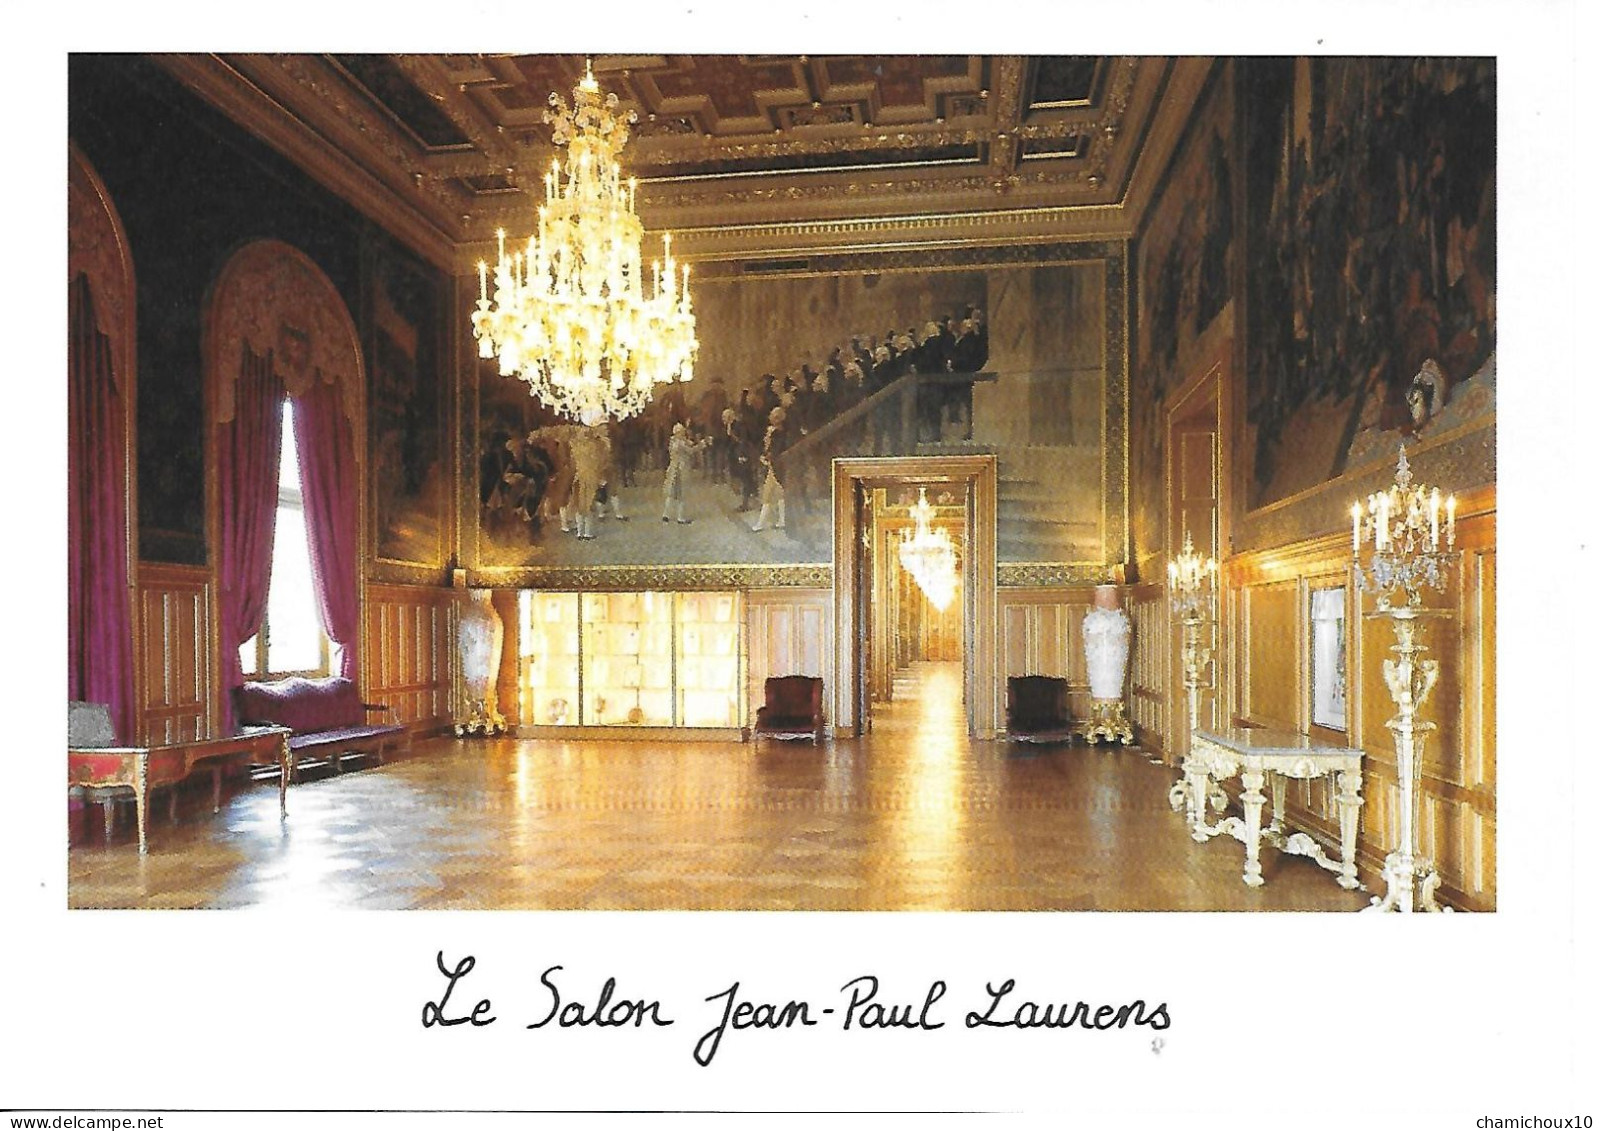 Livret Avec 5 Cp De L'hôtel De Ville De Paris-salles-salon- 15 X21cm-HISTOIRE De L'Hôtel De Ville-de Jean Tibery Maire - Histoire